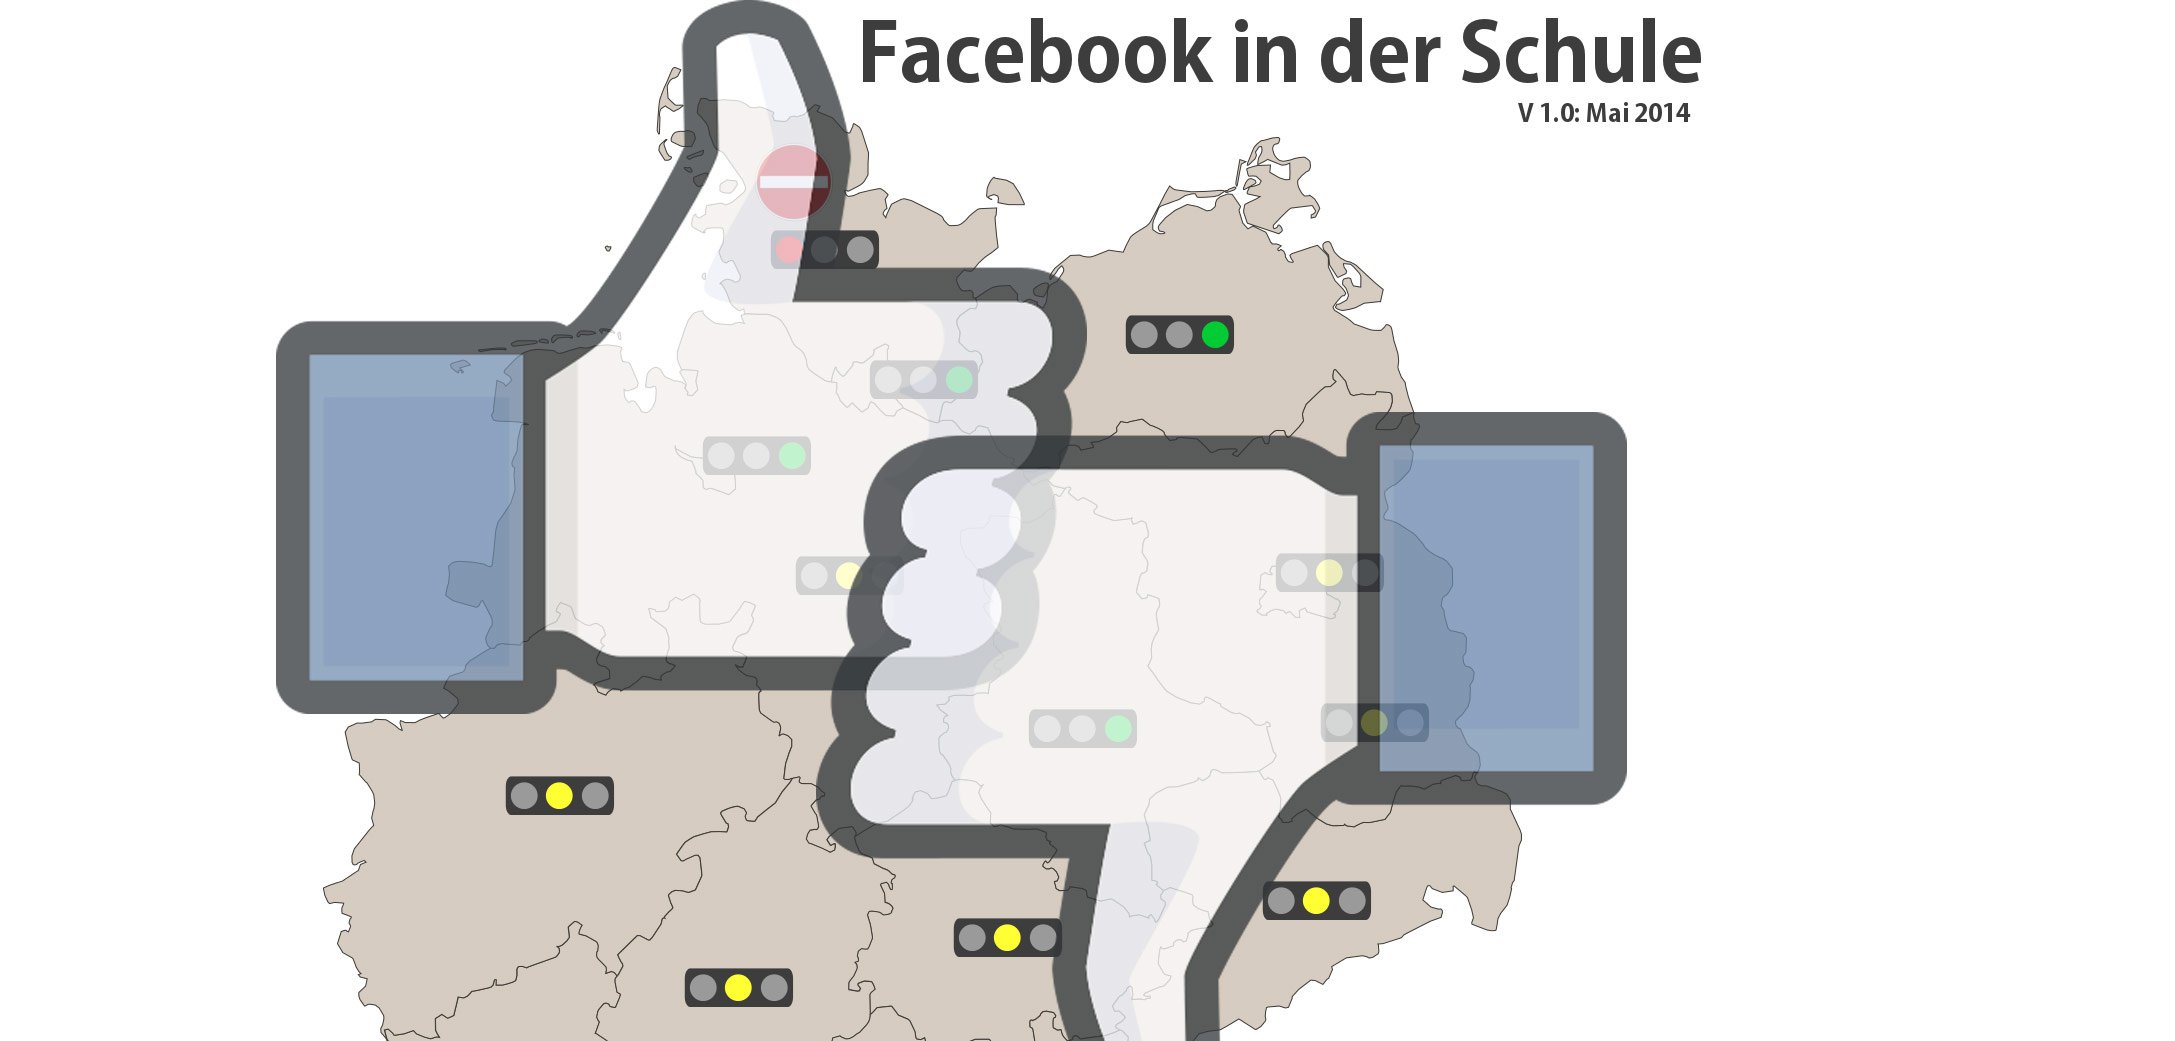 Facebook Verbot in der Schule: Ist Facebook für die Schule erlaubt oder verboten? 2